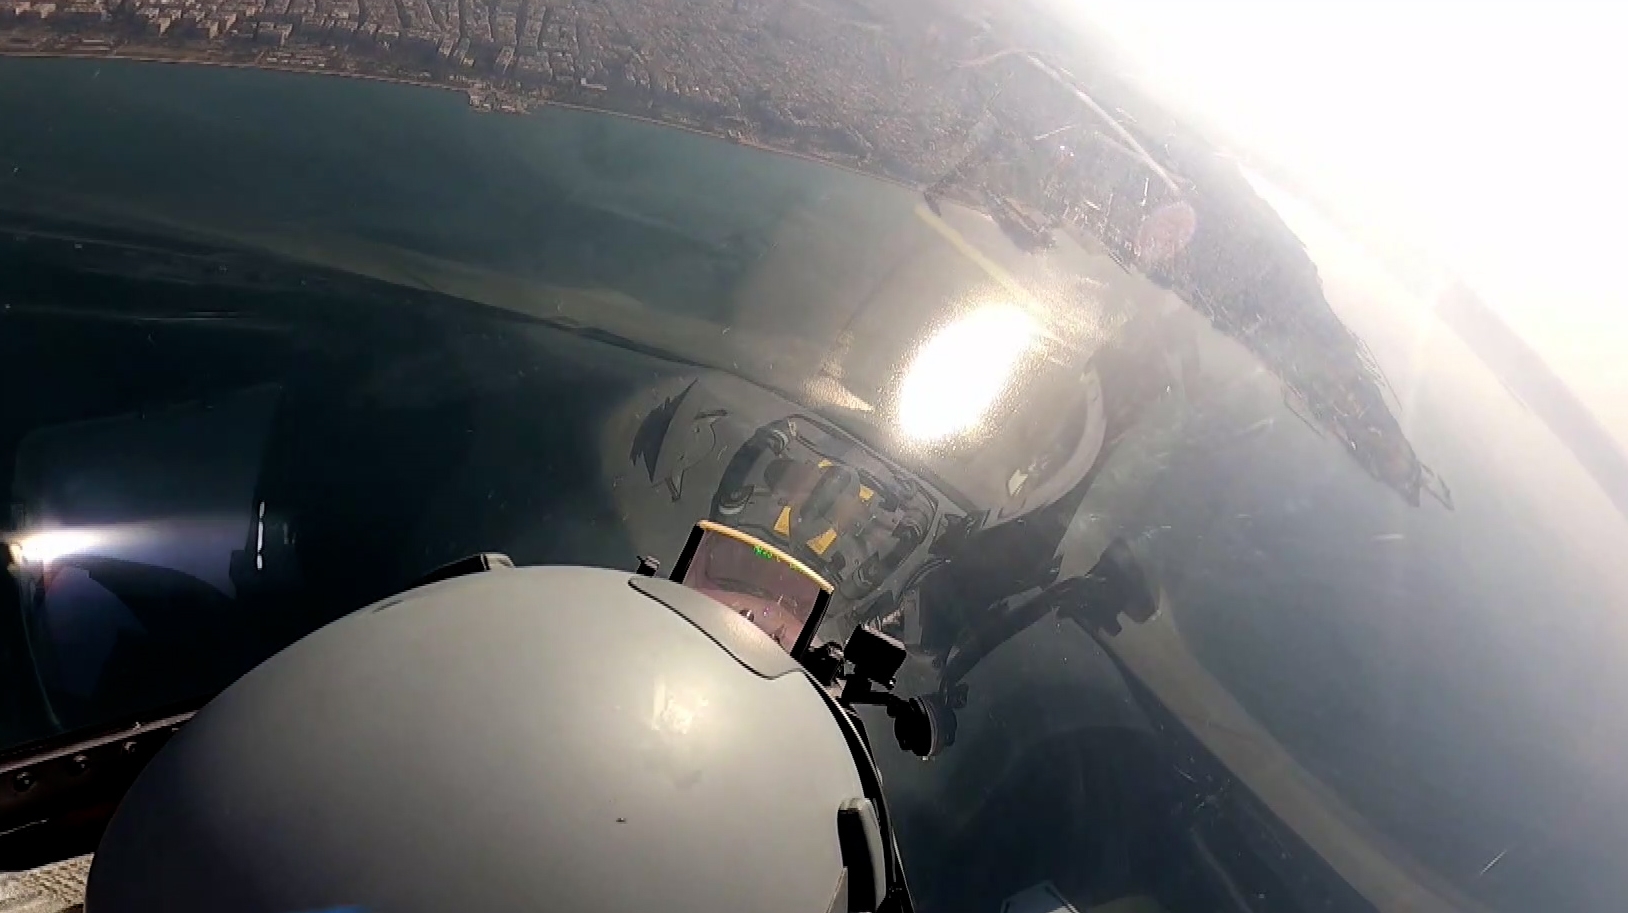 28η Οκτωβρίου – Βίντεο: Οι εντυπωσιακές ακροβατικές επιδείξεις με το αεροσκάφος τύπου F-16 της ομάδας ΖΕΥΣ